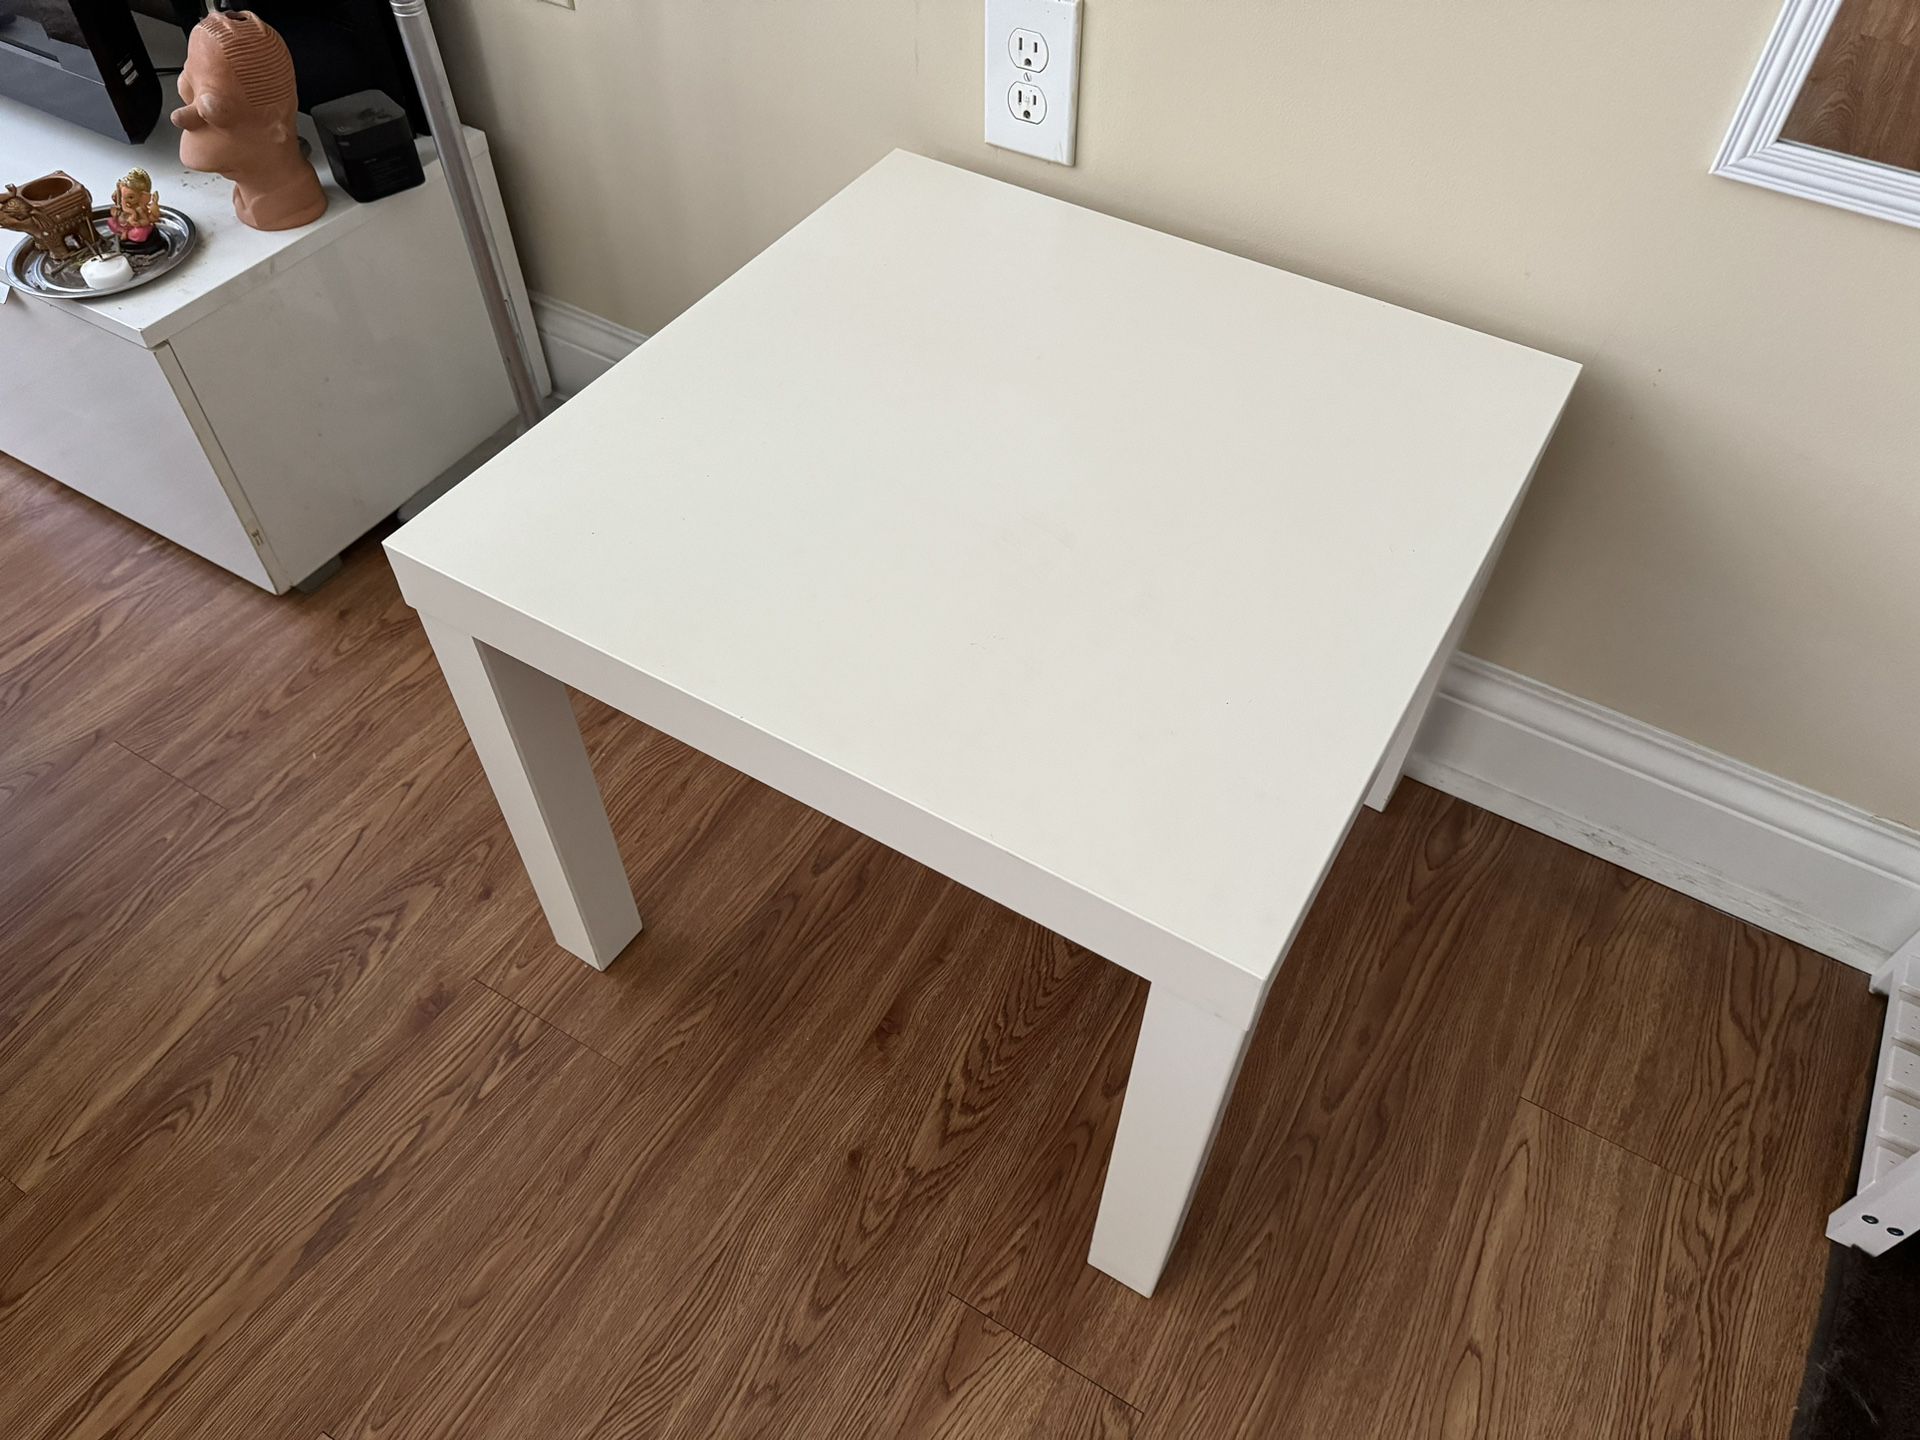 IKEA Side Tables